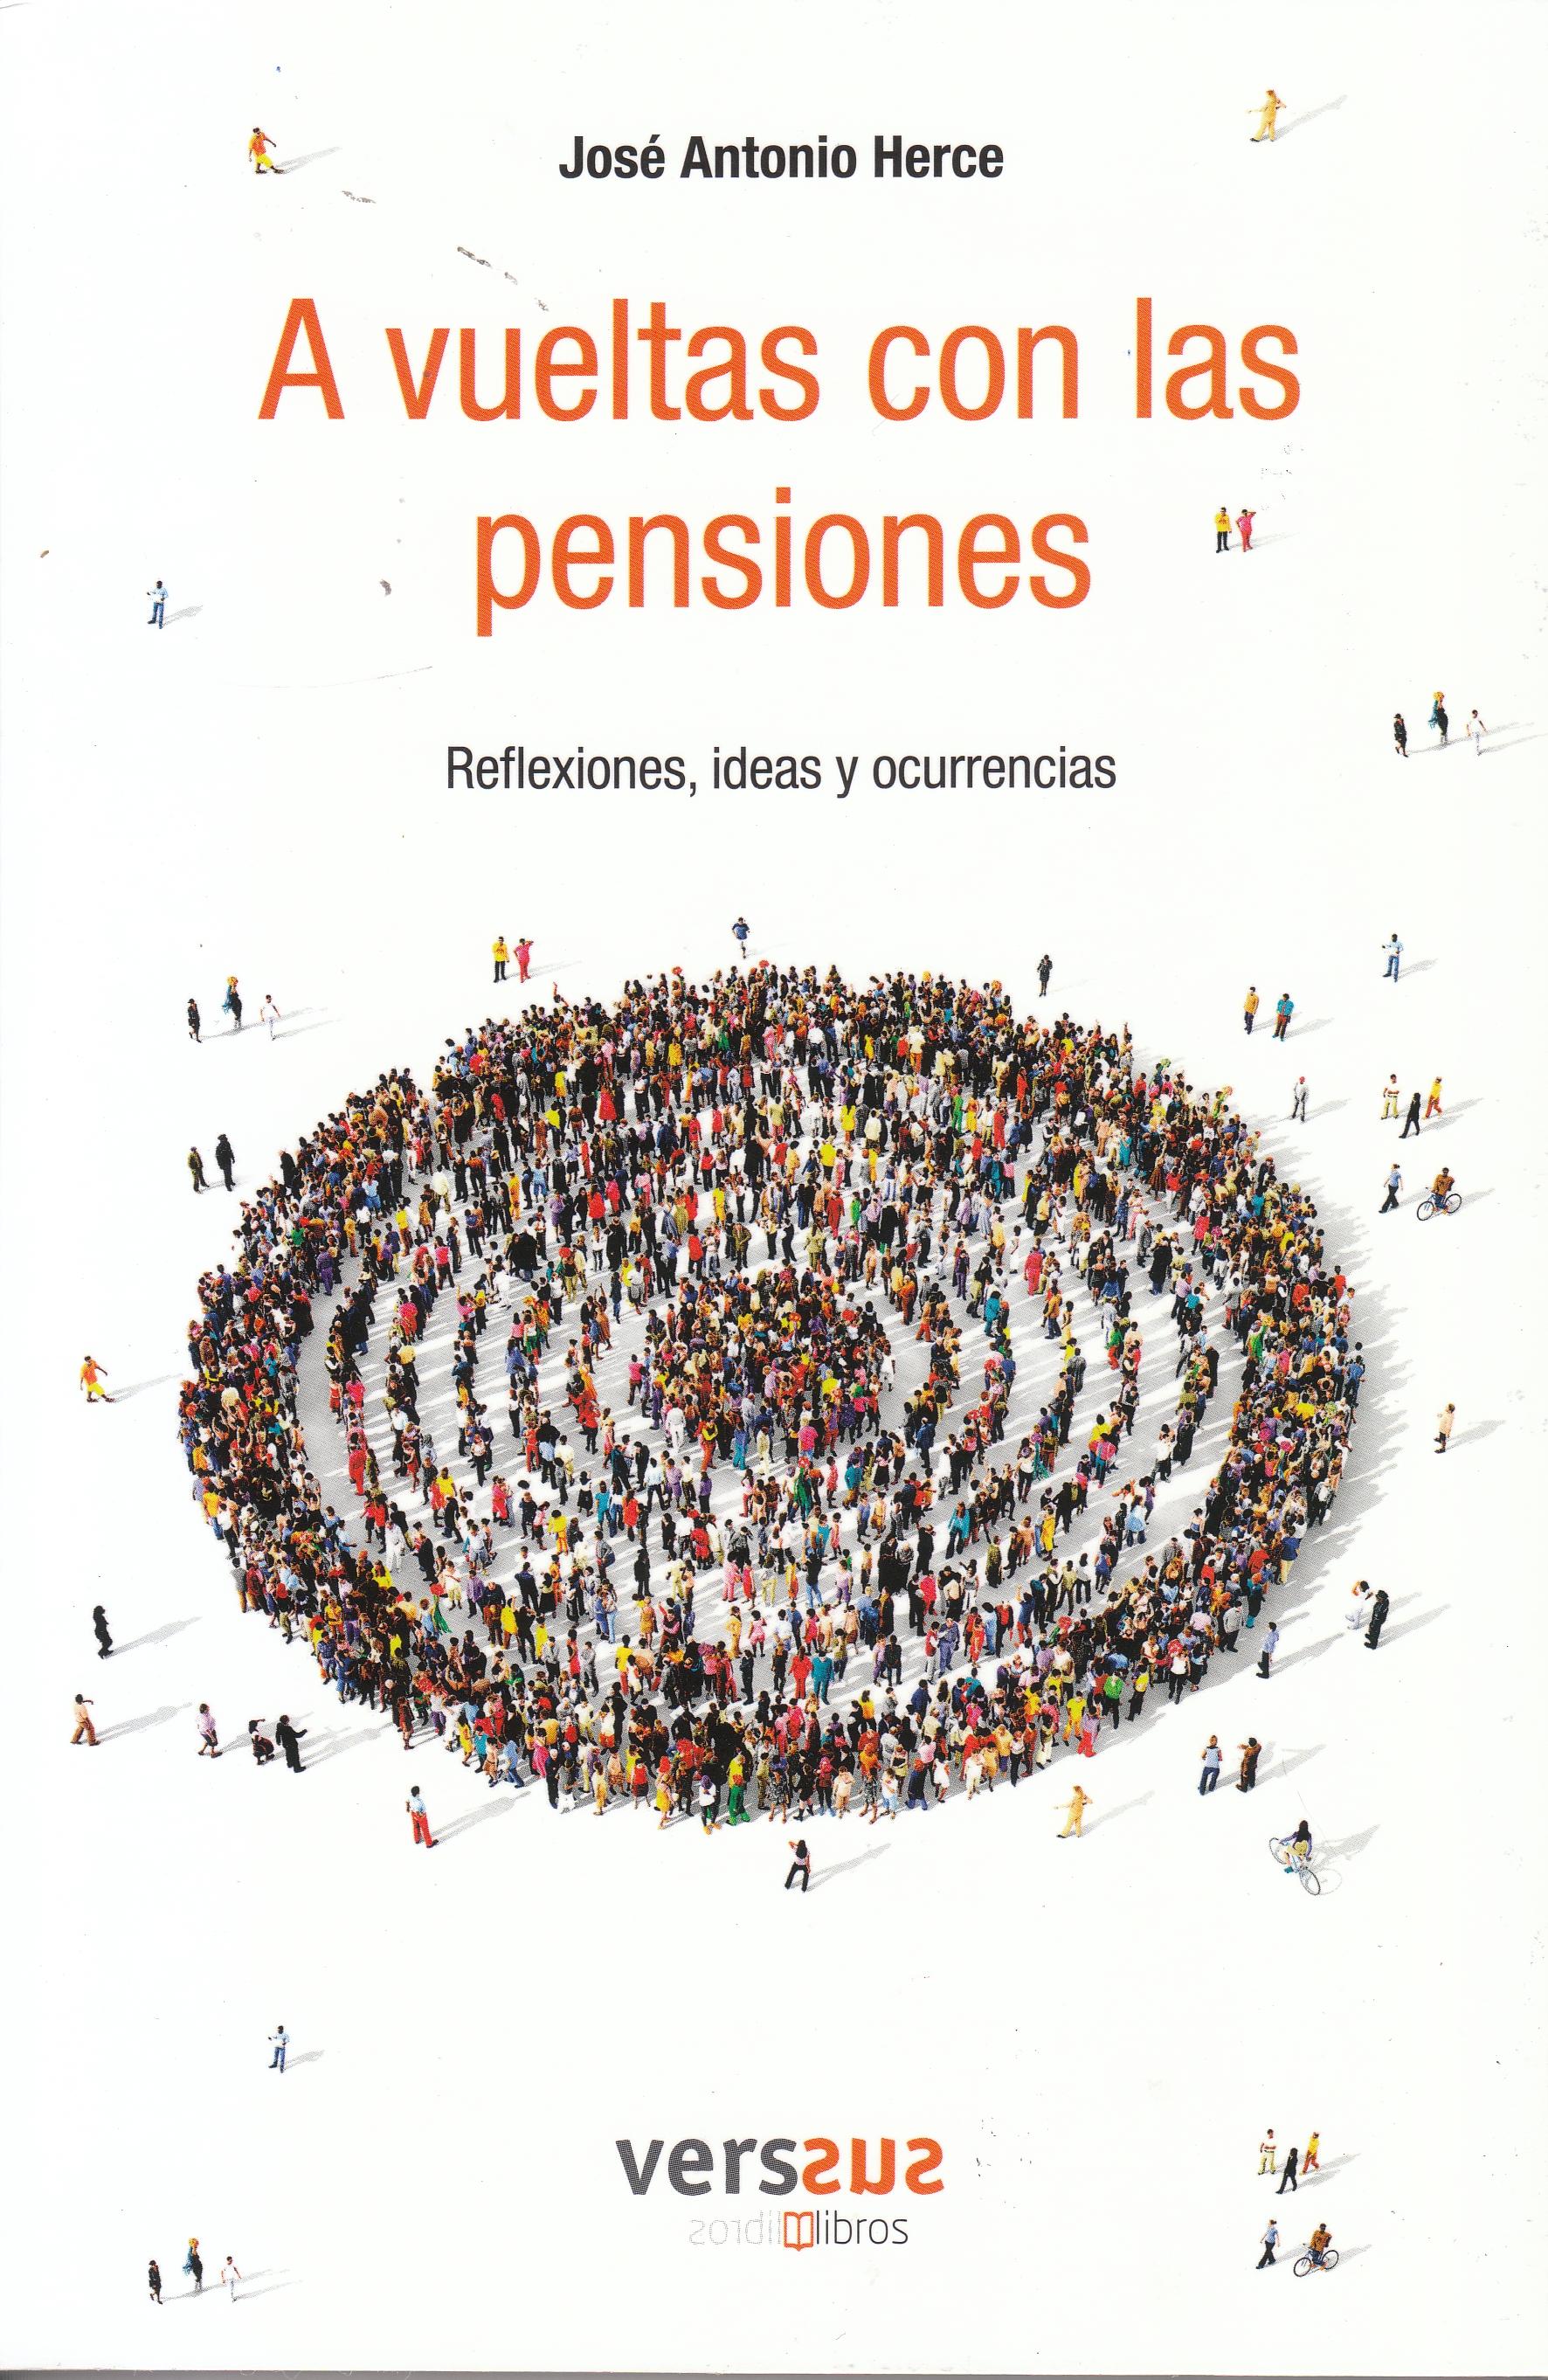 A vueltas con las pensiones "Reflexiones, ideas y ocurrencias"